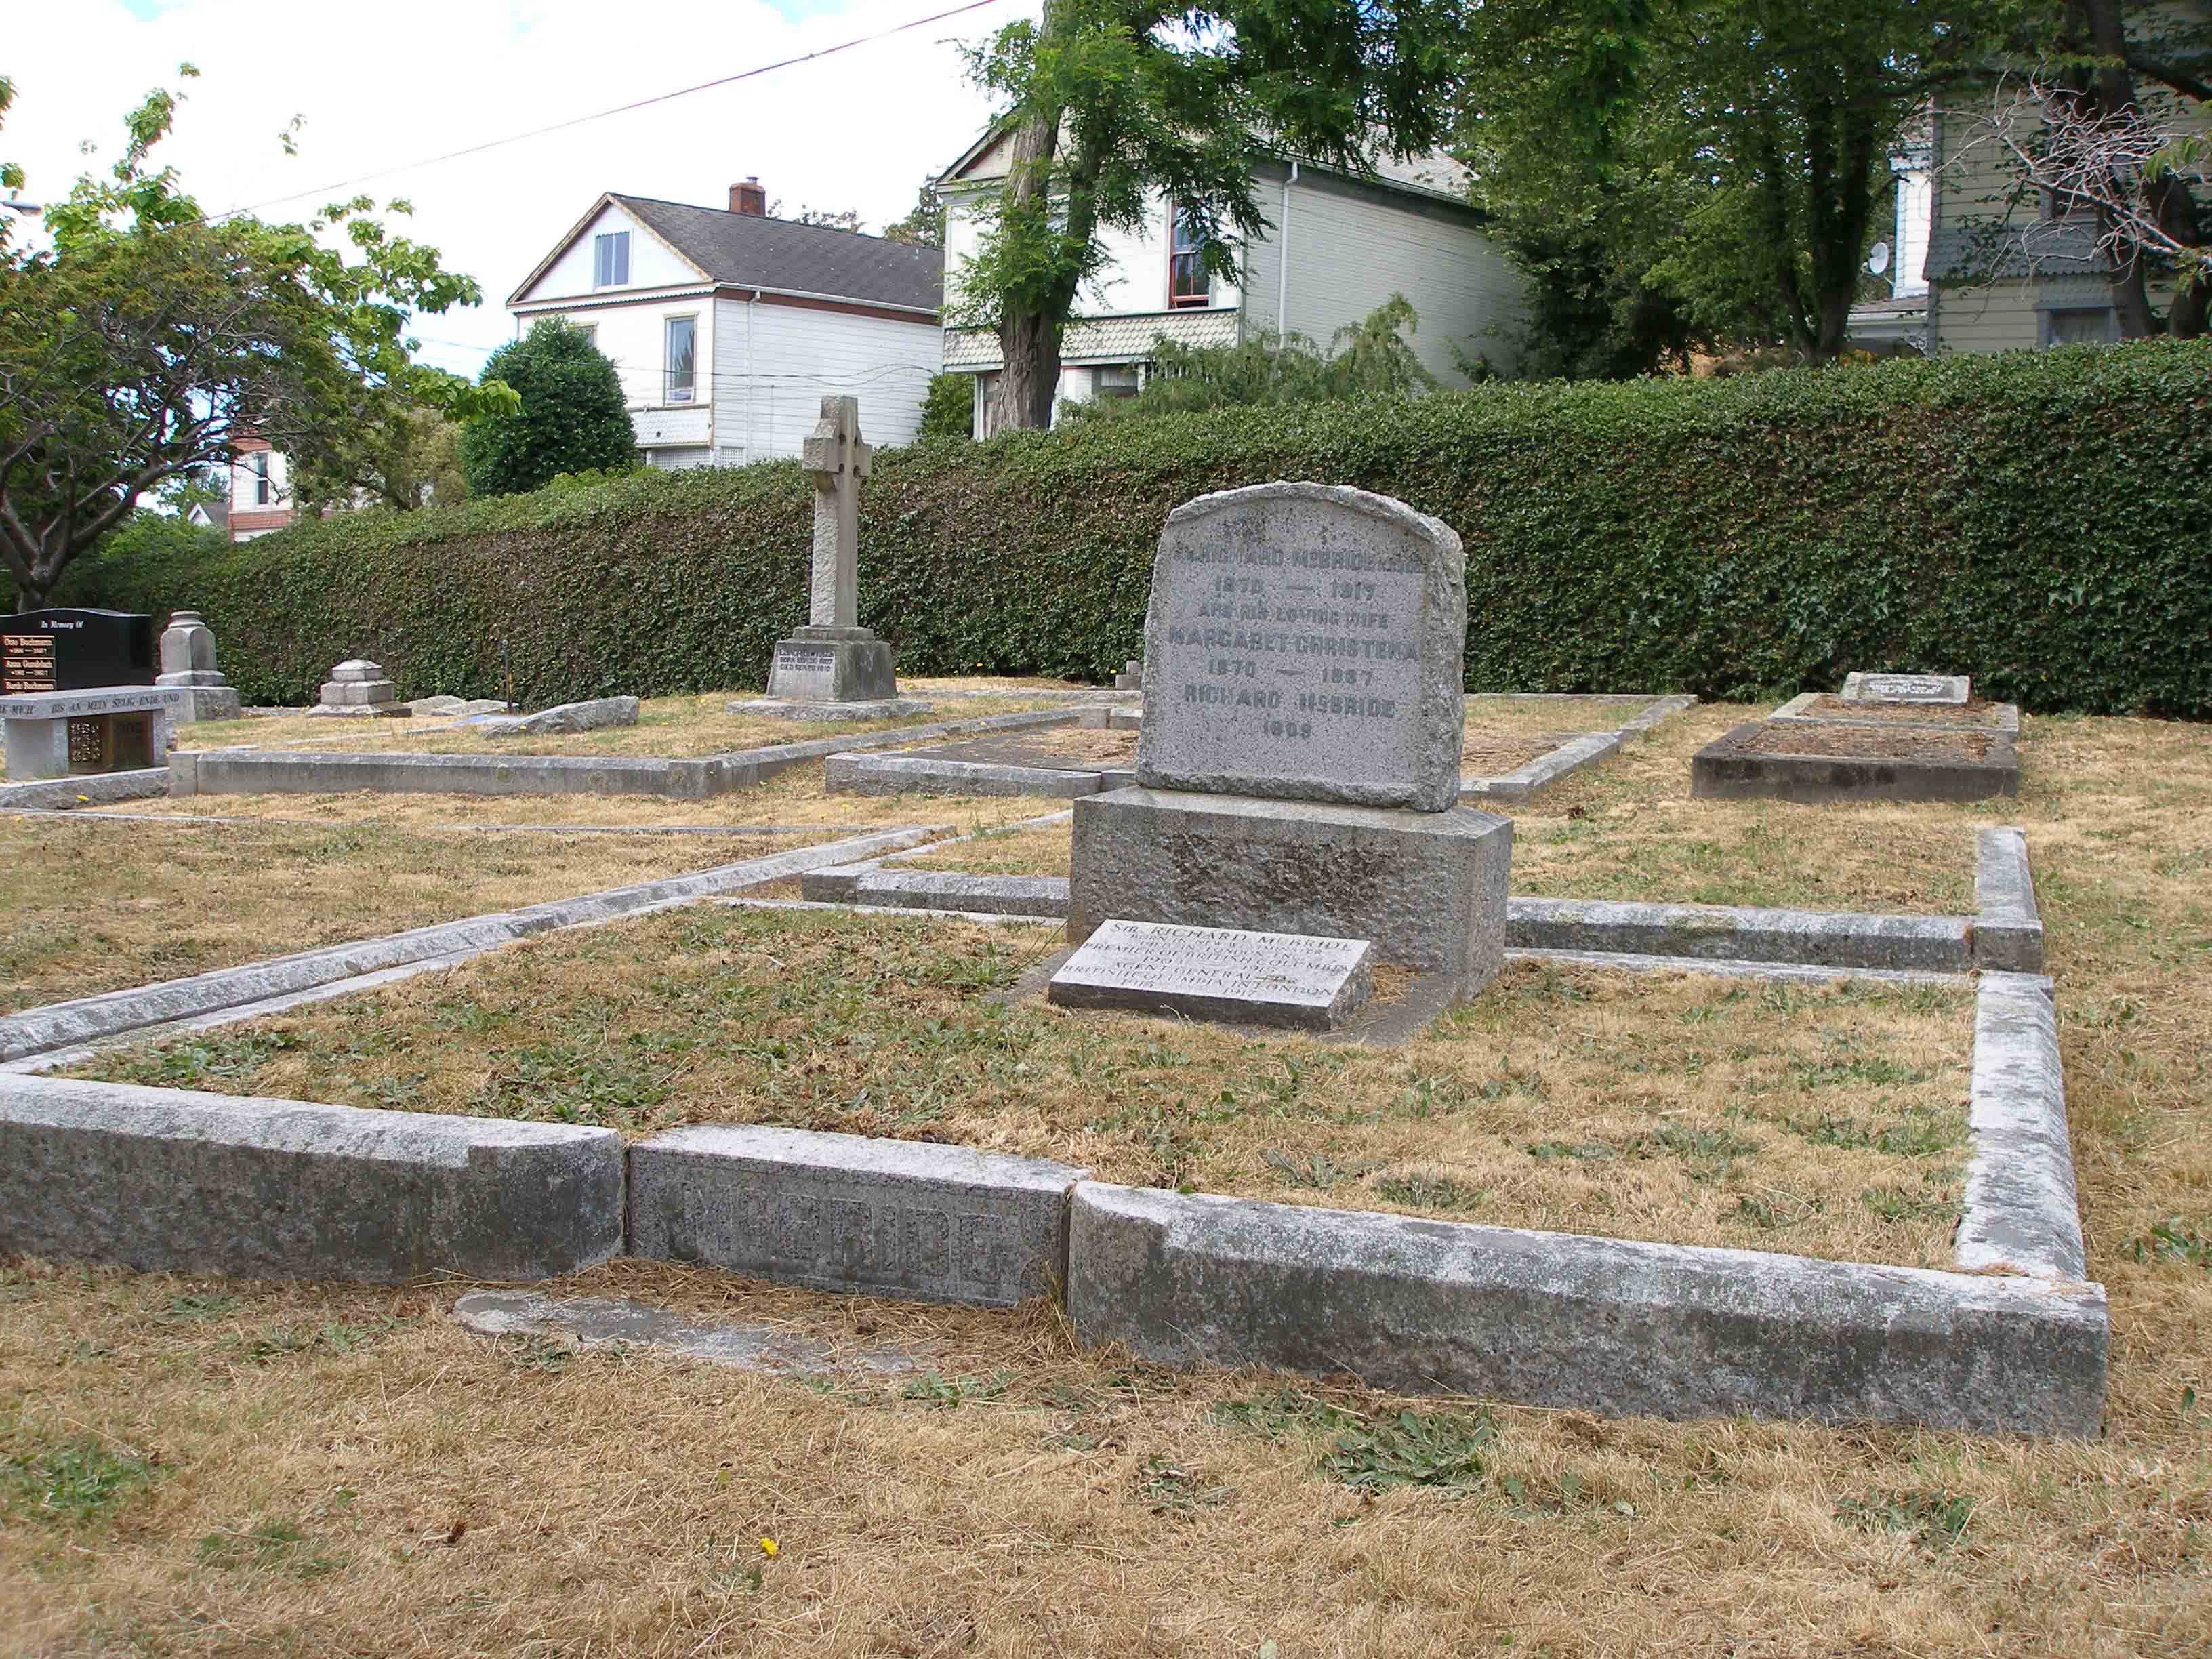 Sir Richard McBride family gravesite